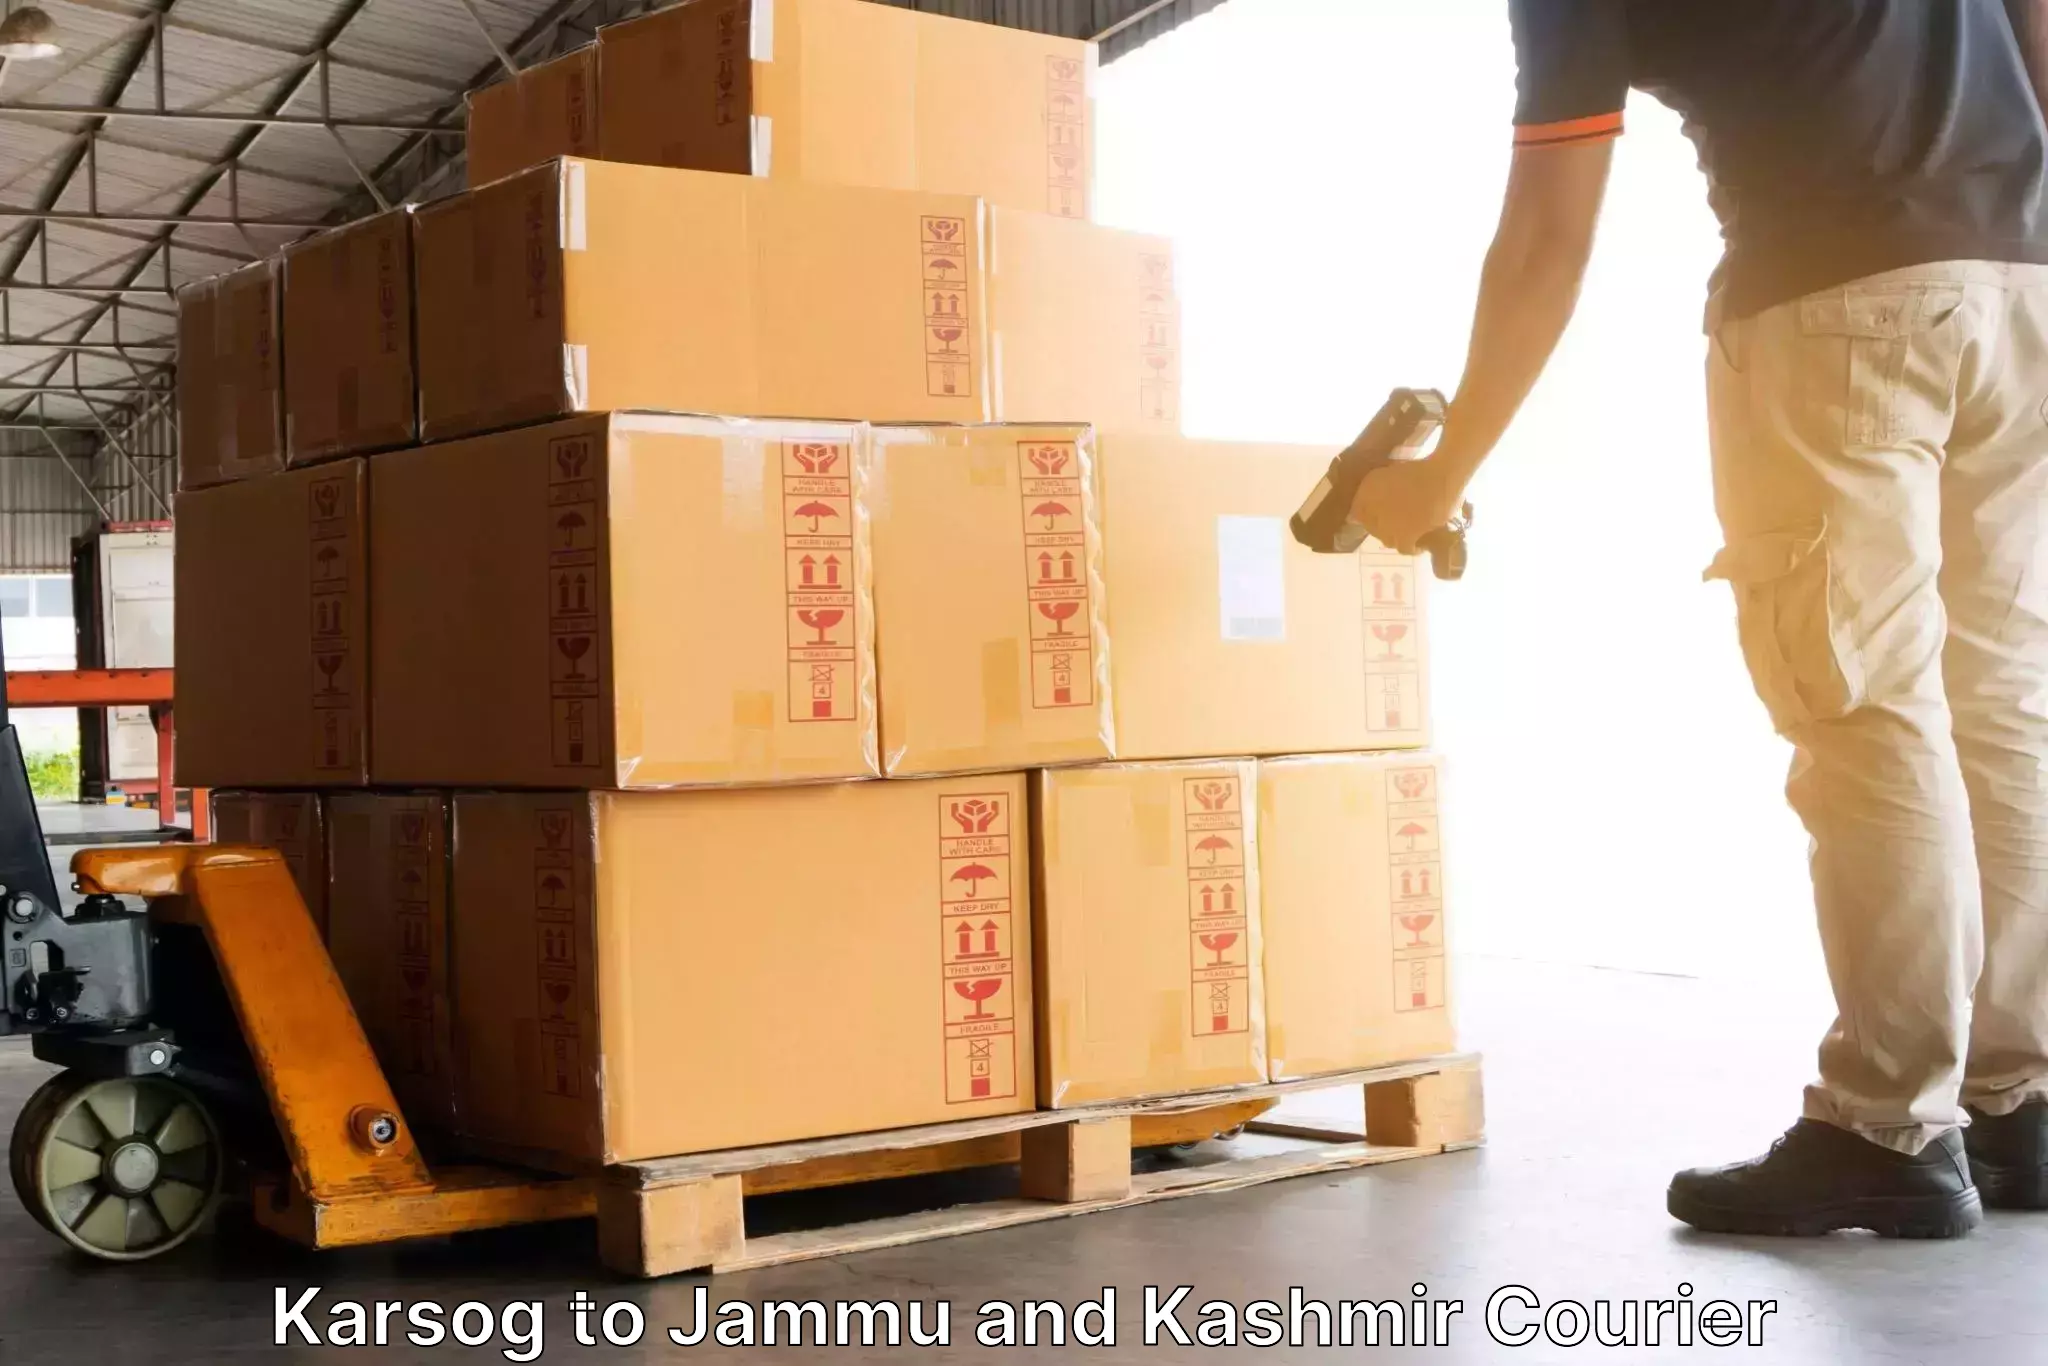 Small business couriers Karsog to Nagrota